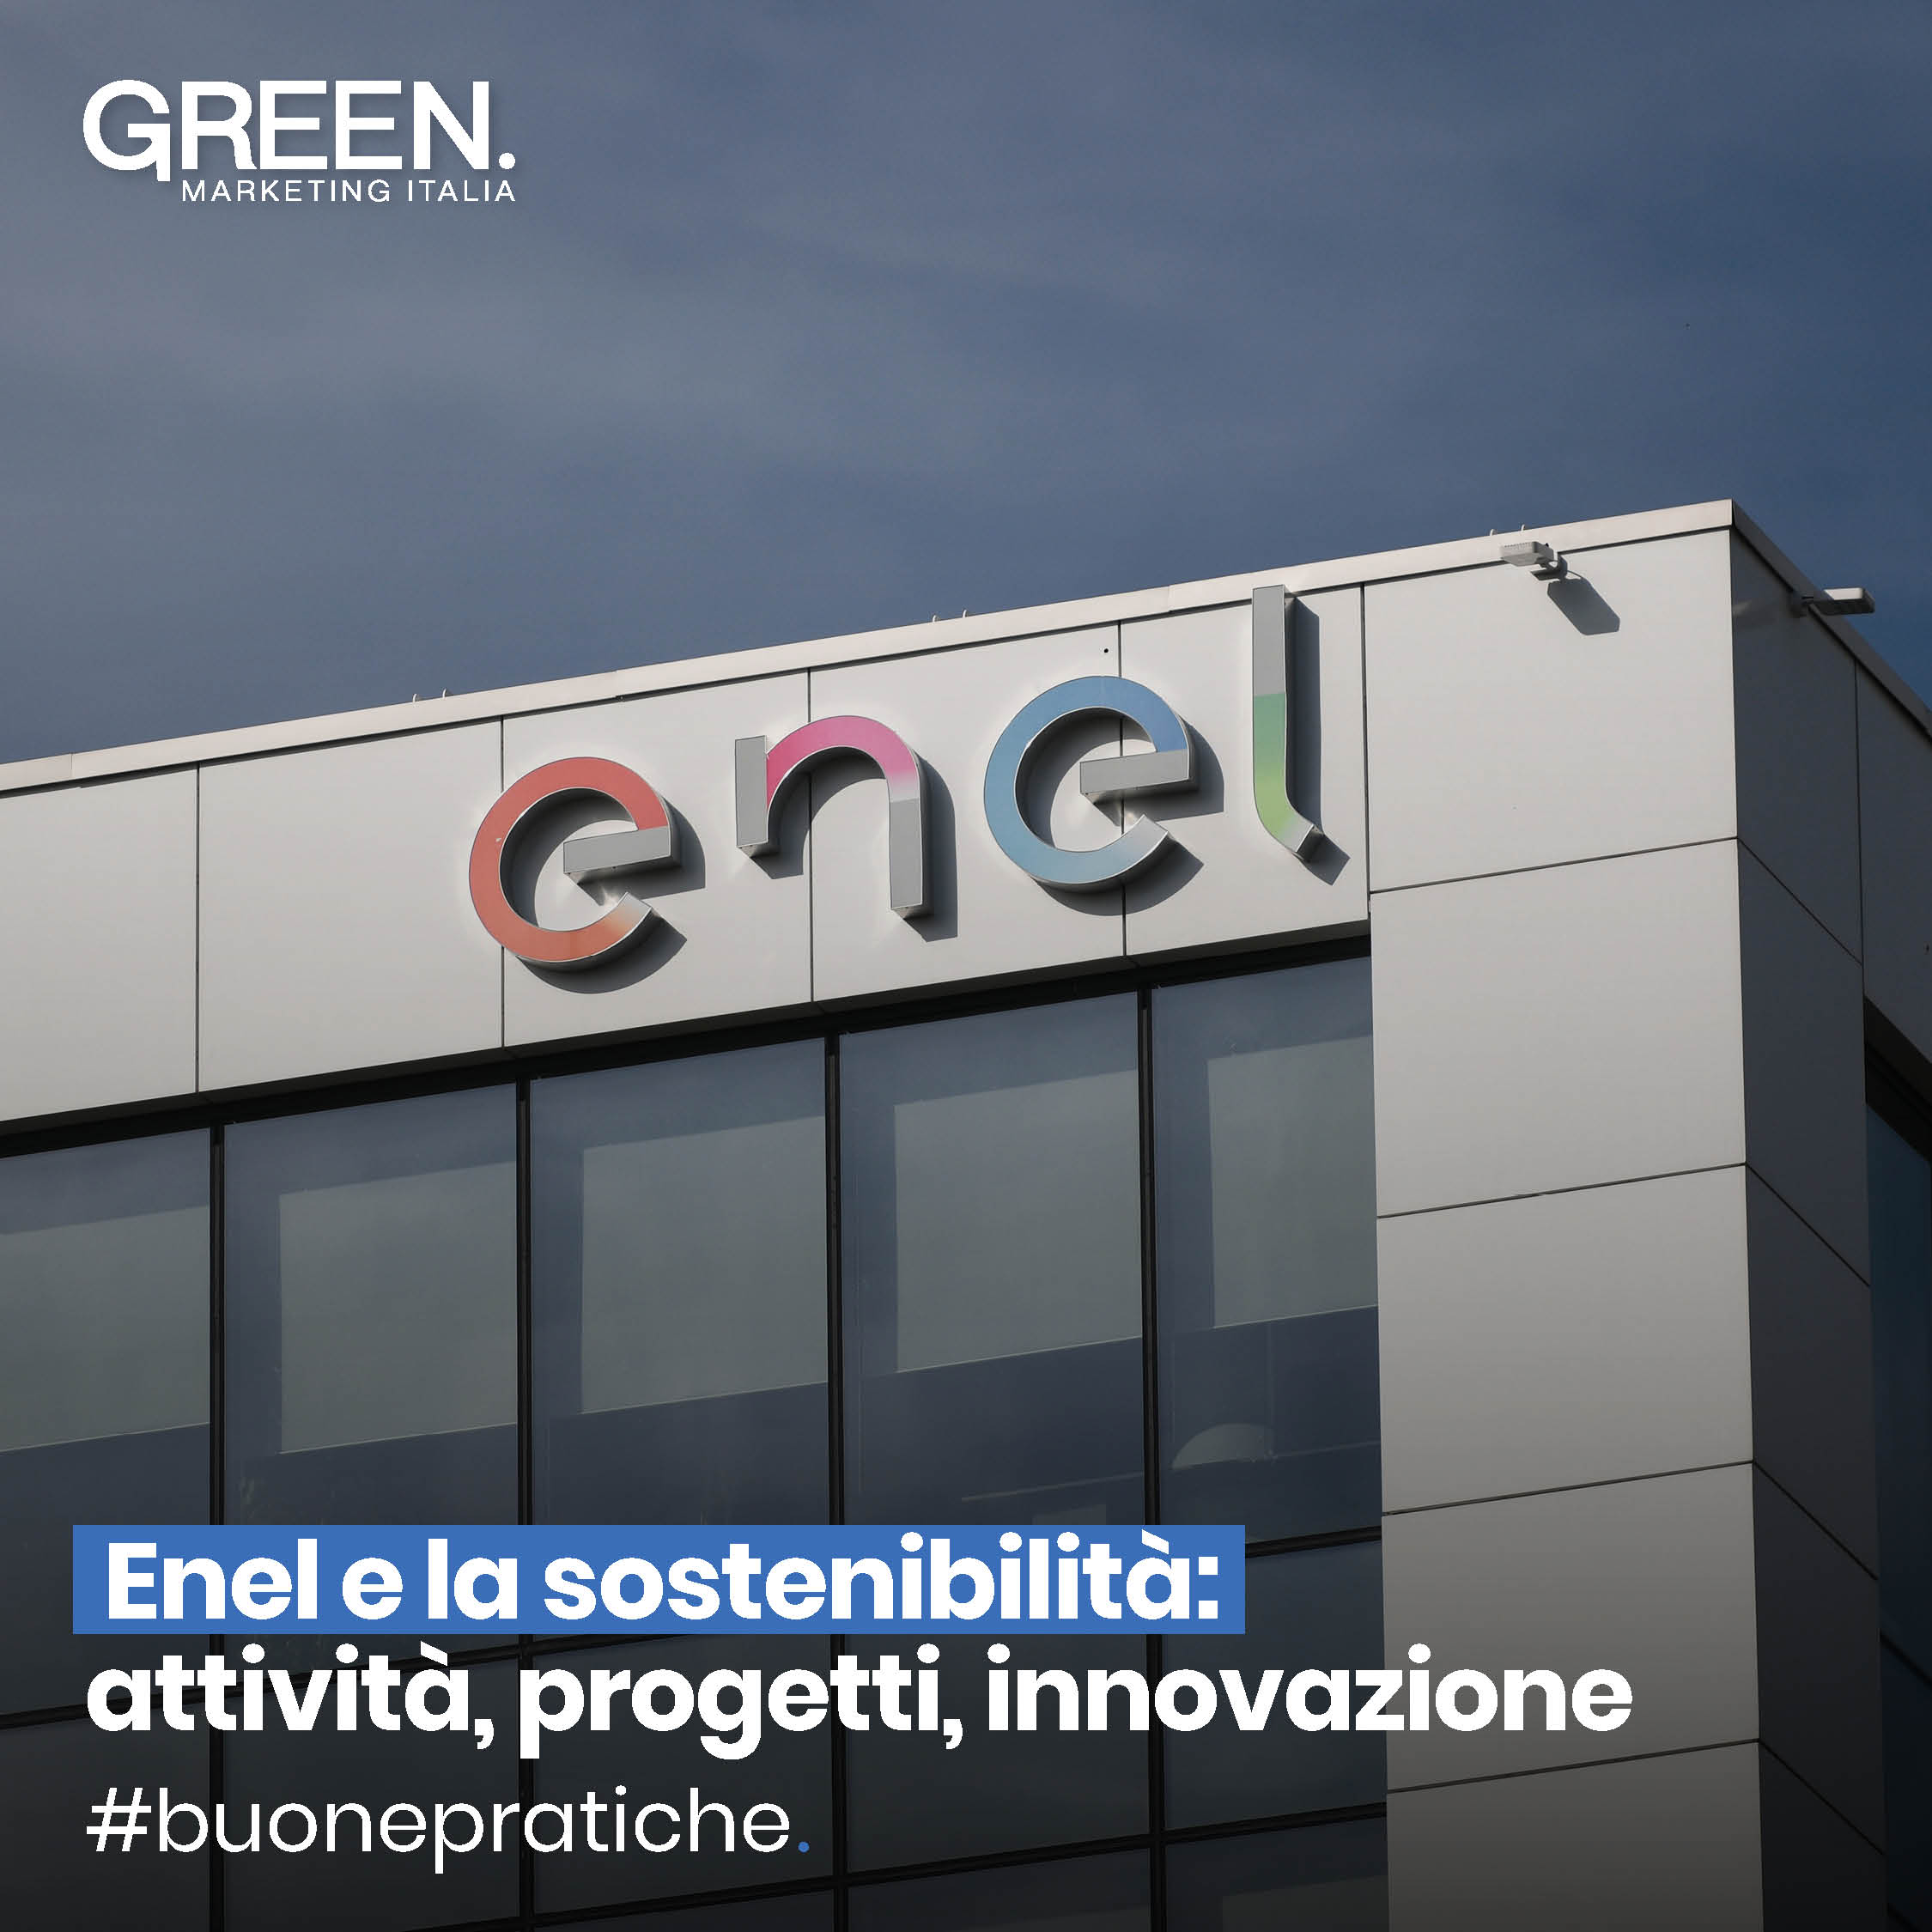 Enel e la sostenibilità